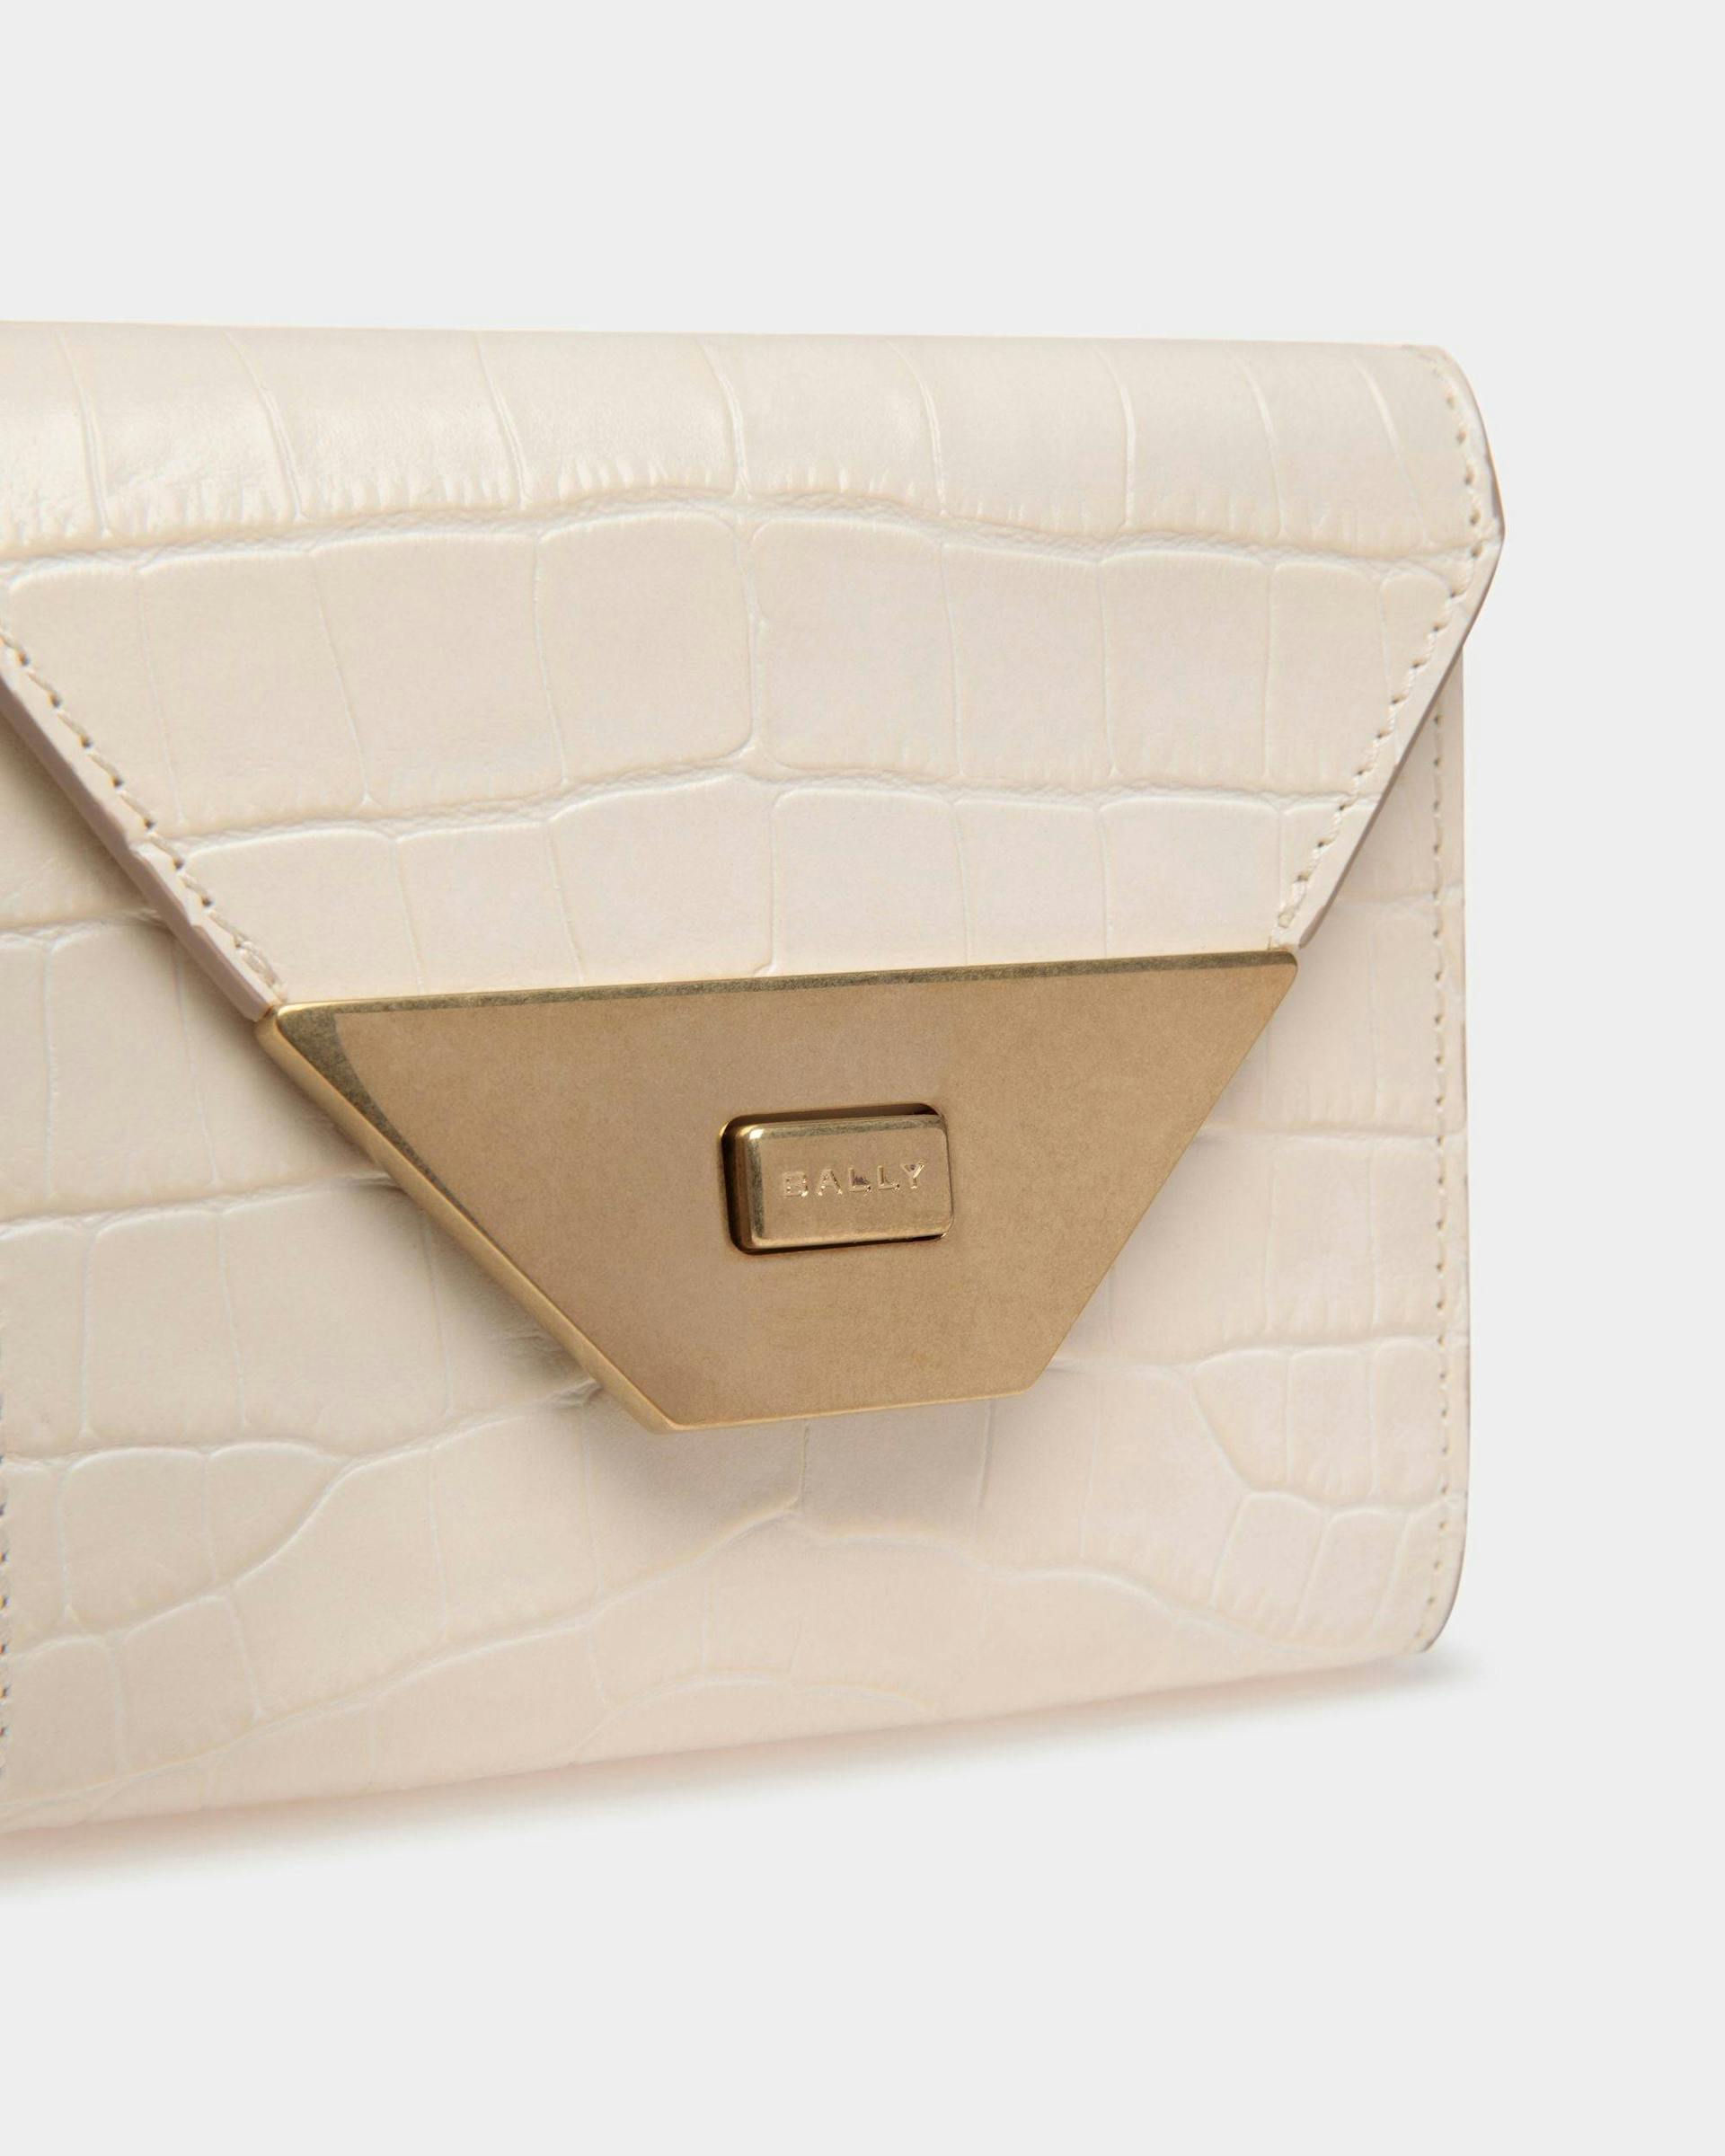 Women's Tilt Wallet In White Crocodile Print Leather | Bally | Still Life Detail